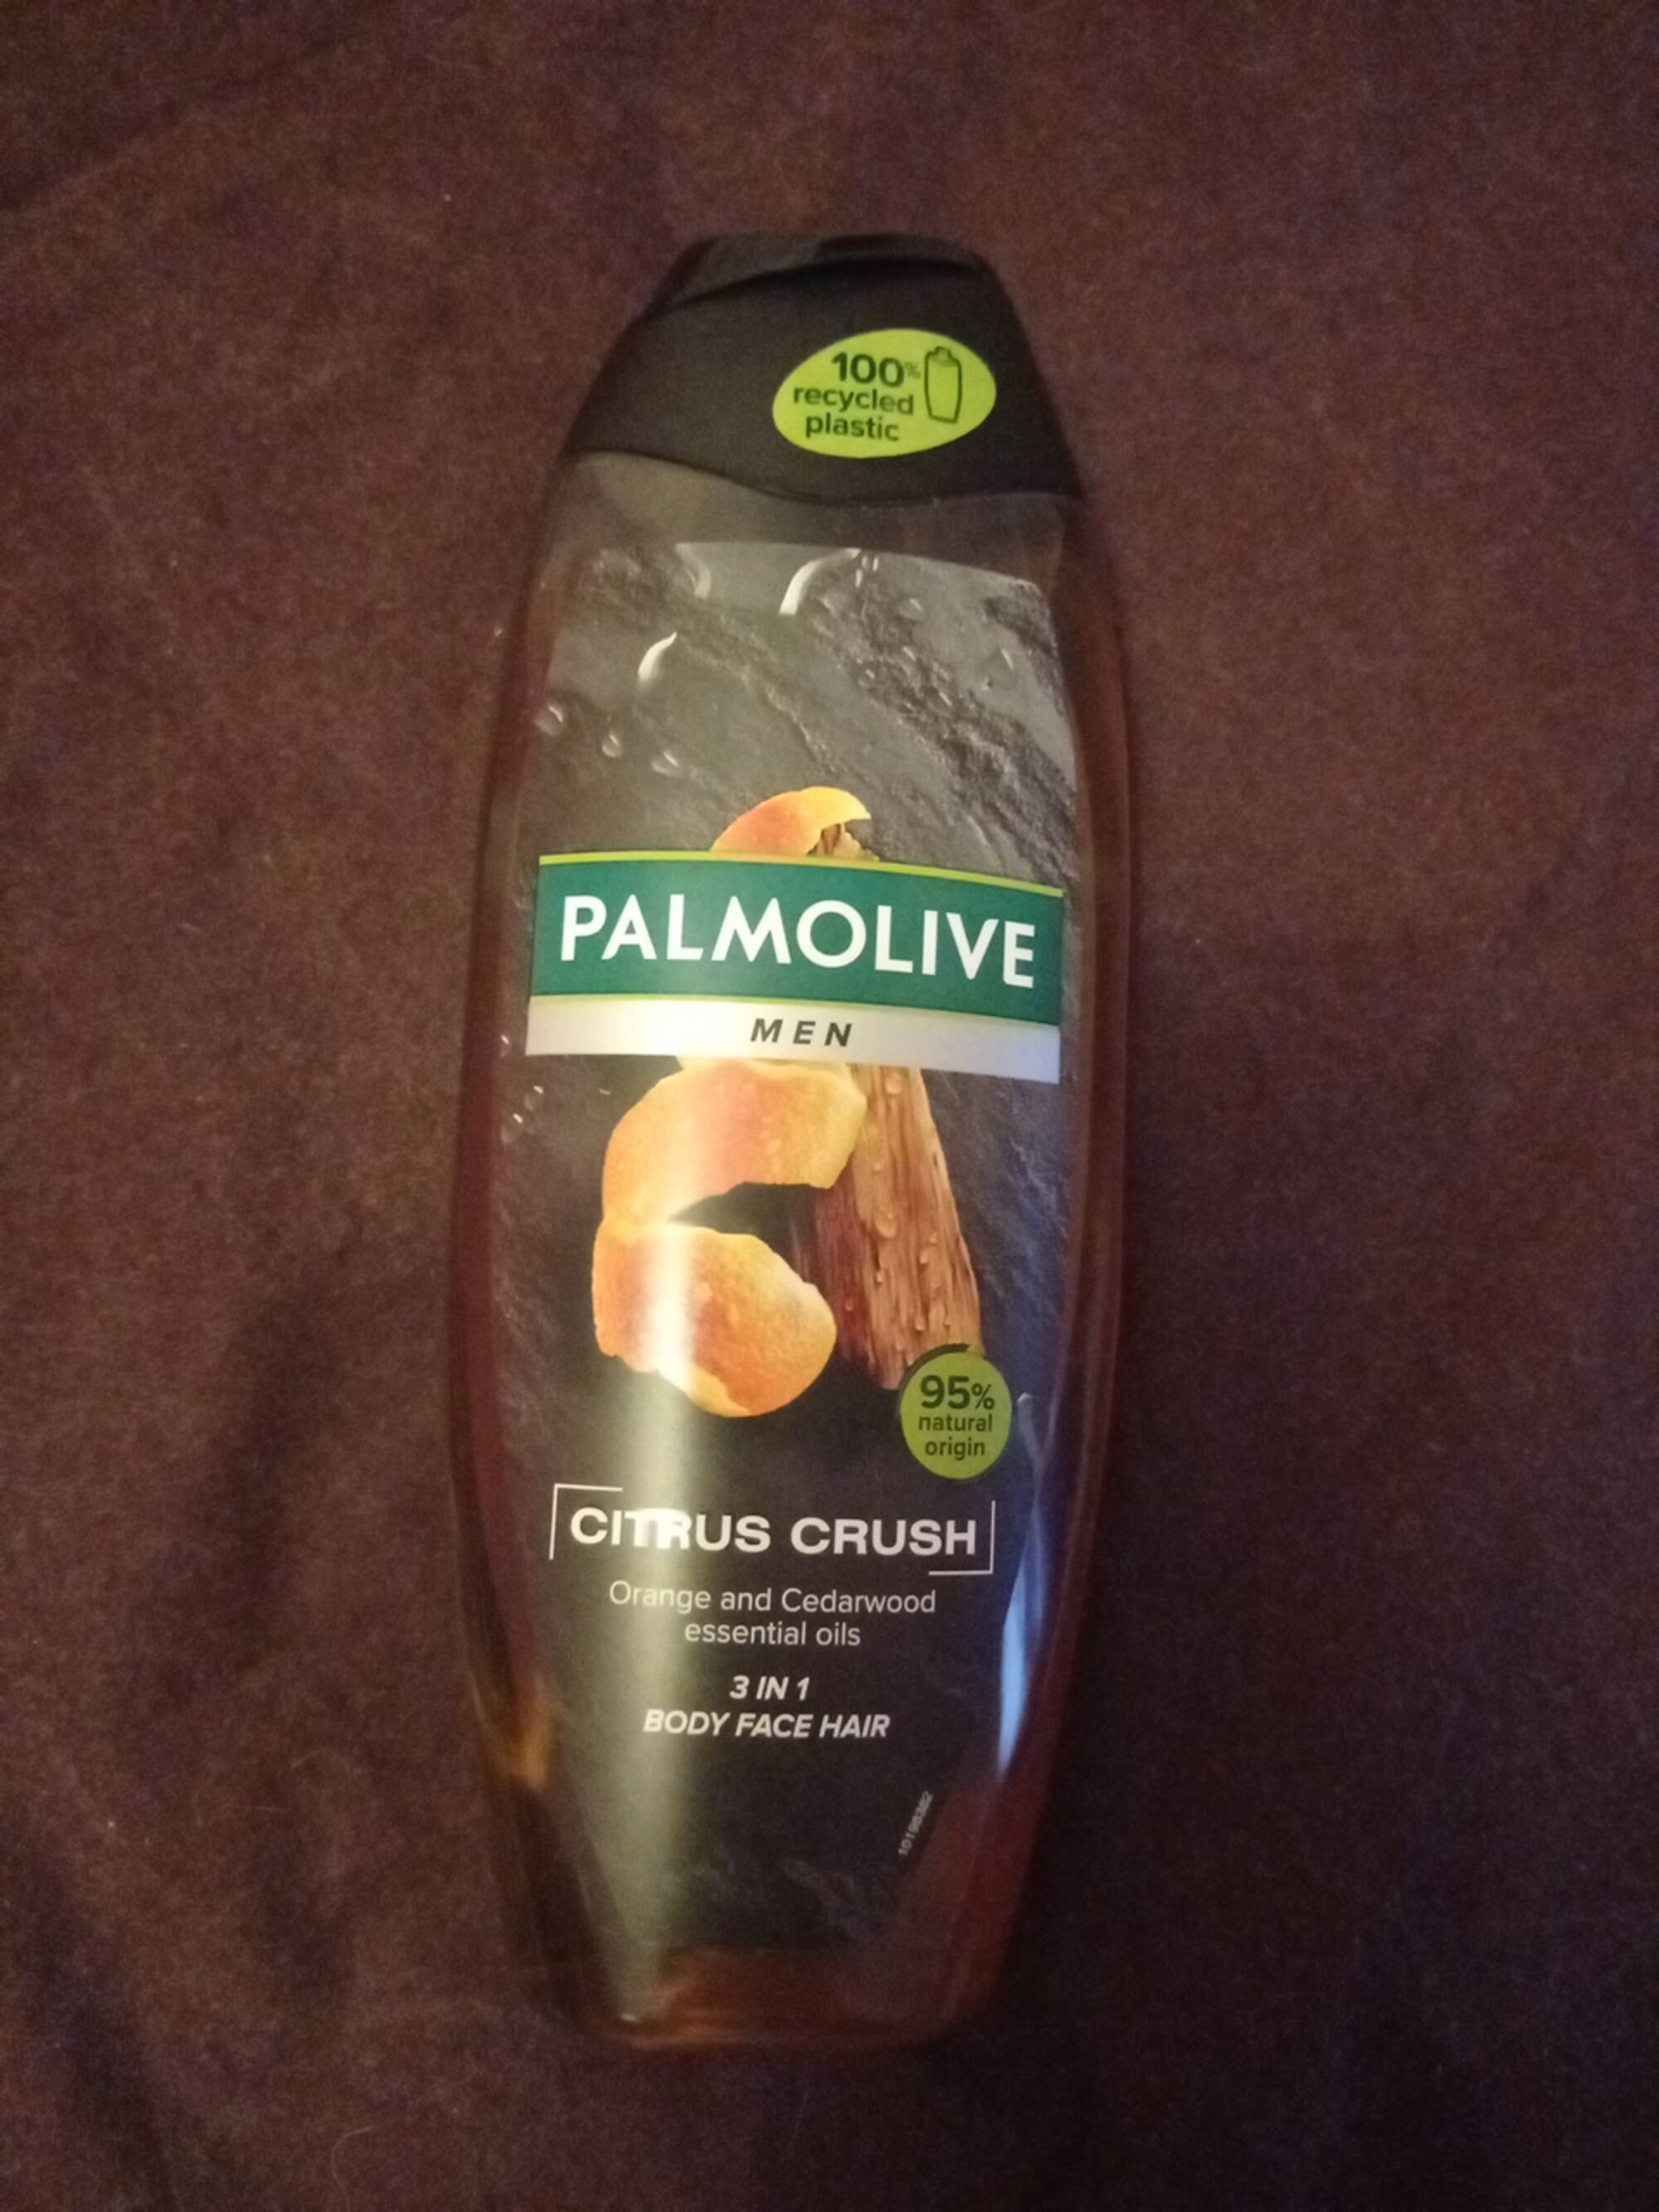 PALMOLIVE - Citrus crush men - Orange and cedarwood essential oils